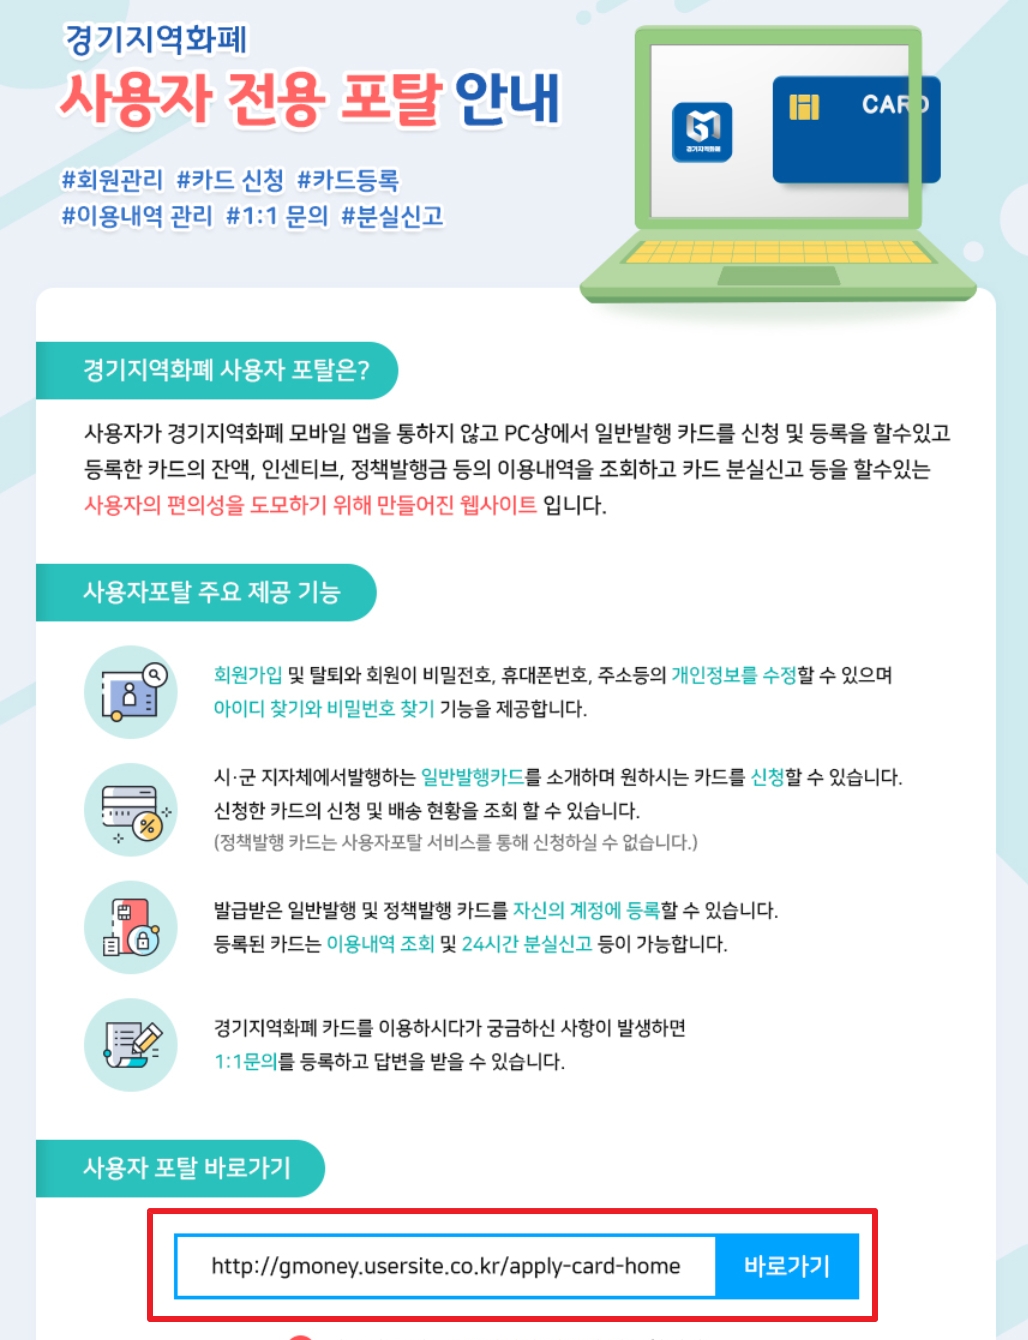 경기도 재난지원금 경기지역화폐 사용내역